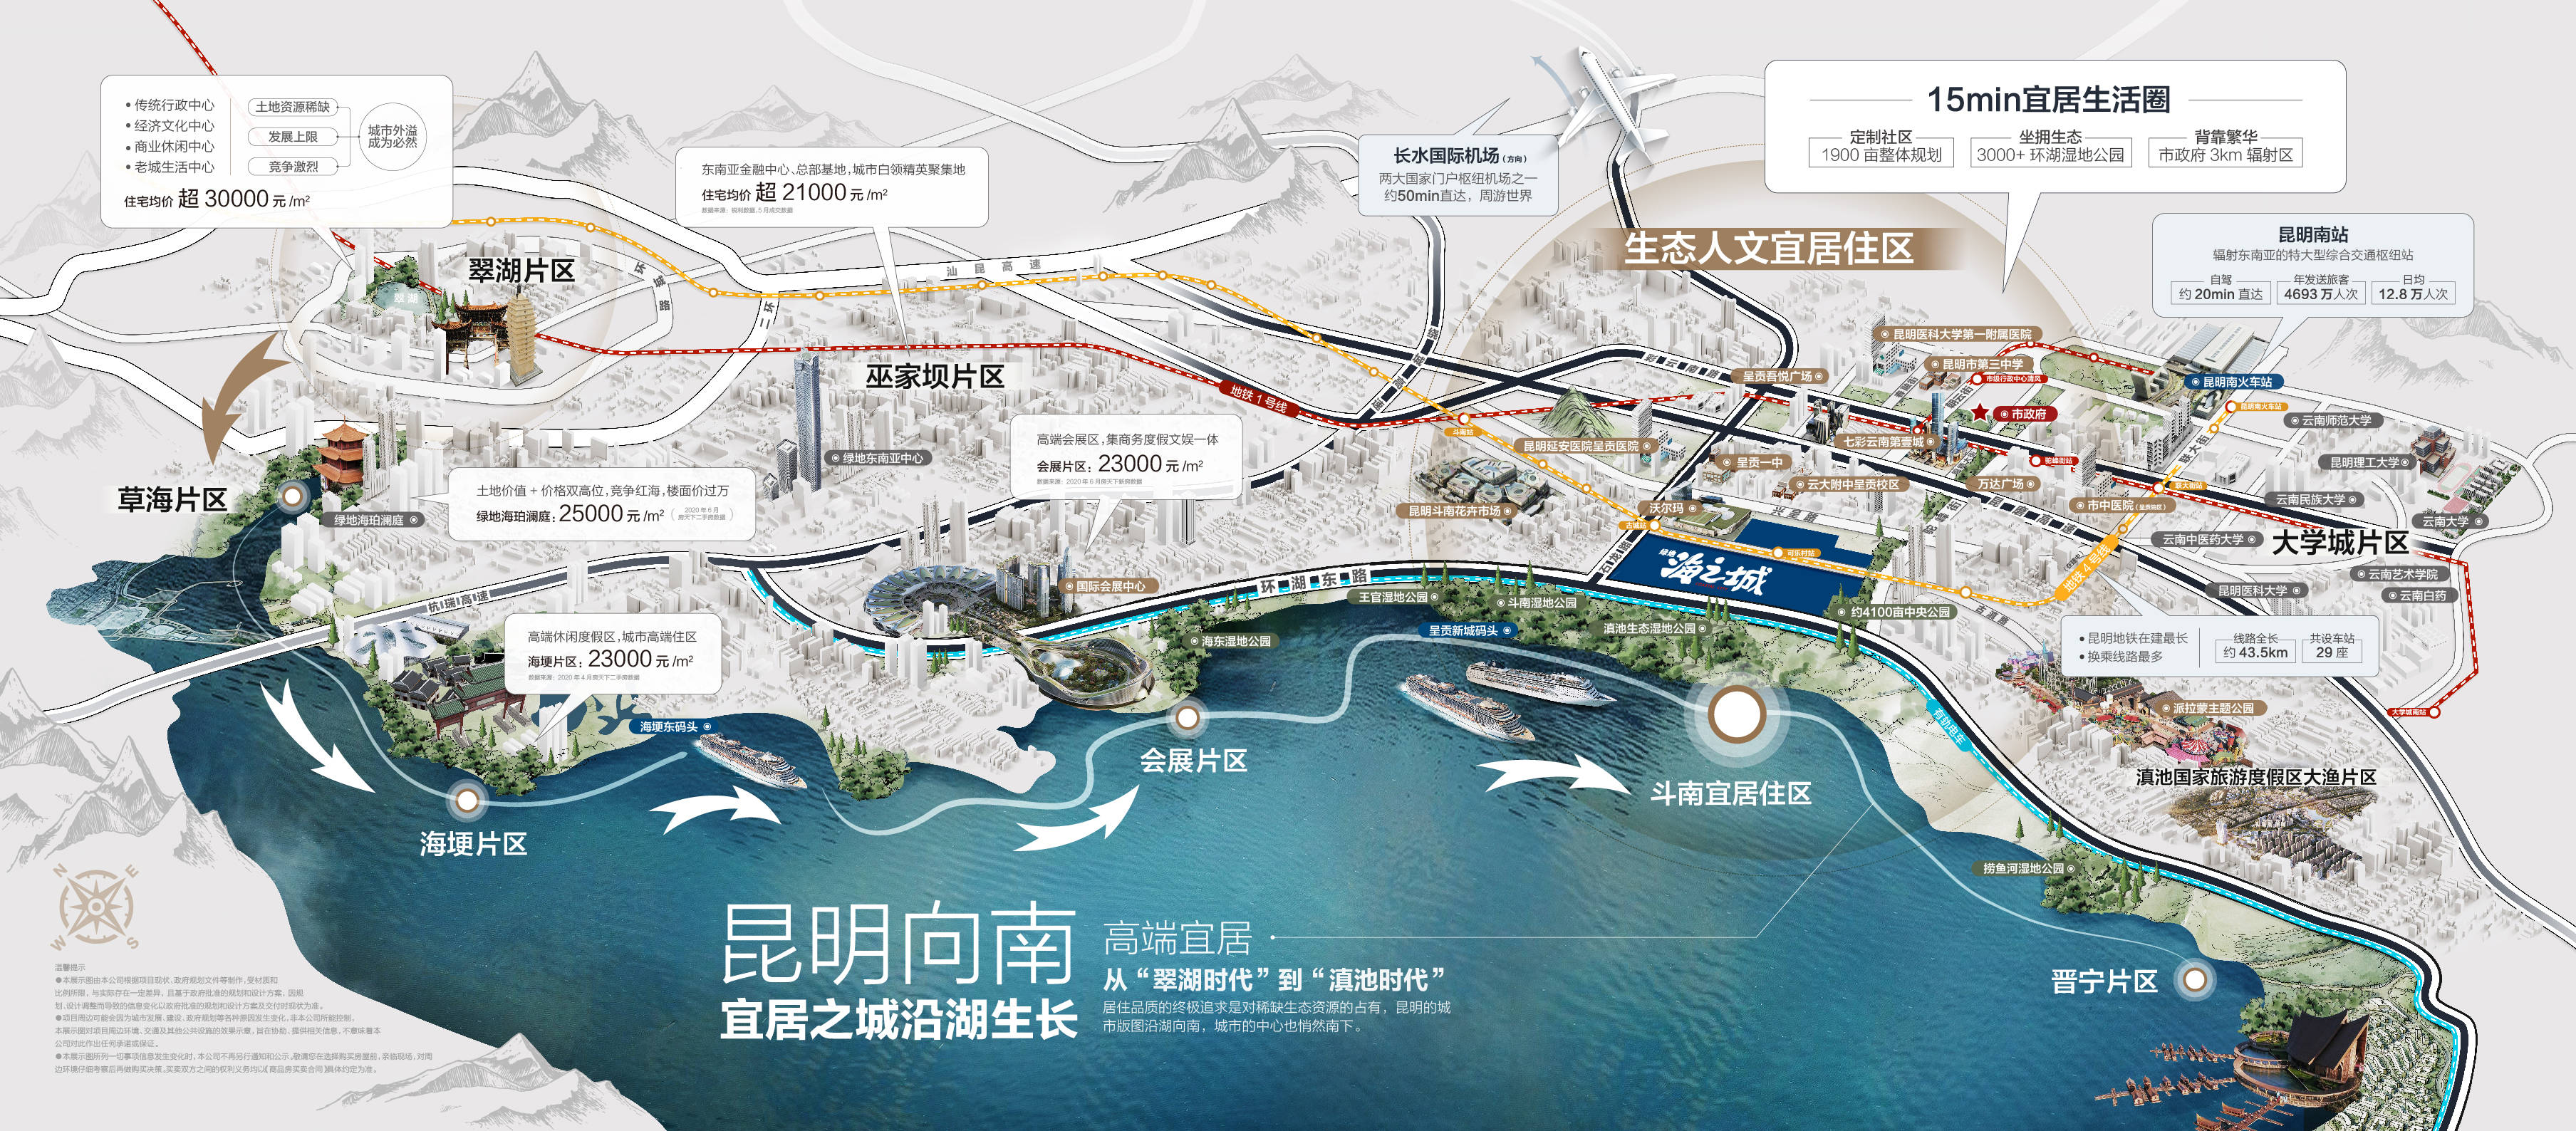 绿地香港每一次布局都紧跟昆明城市发展,站在新昆明的新起点,聚合城市